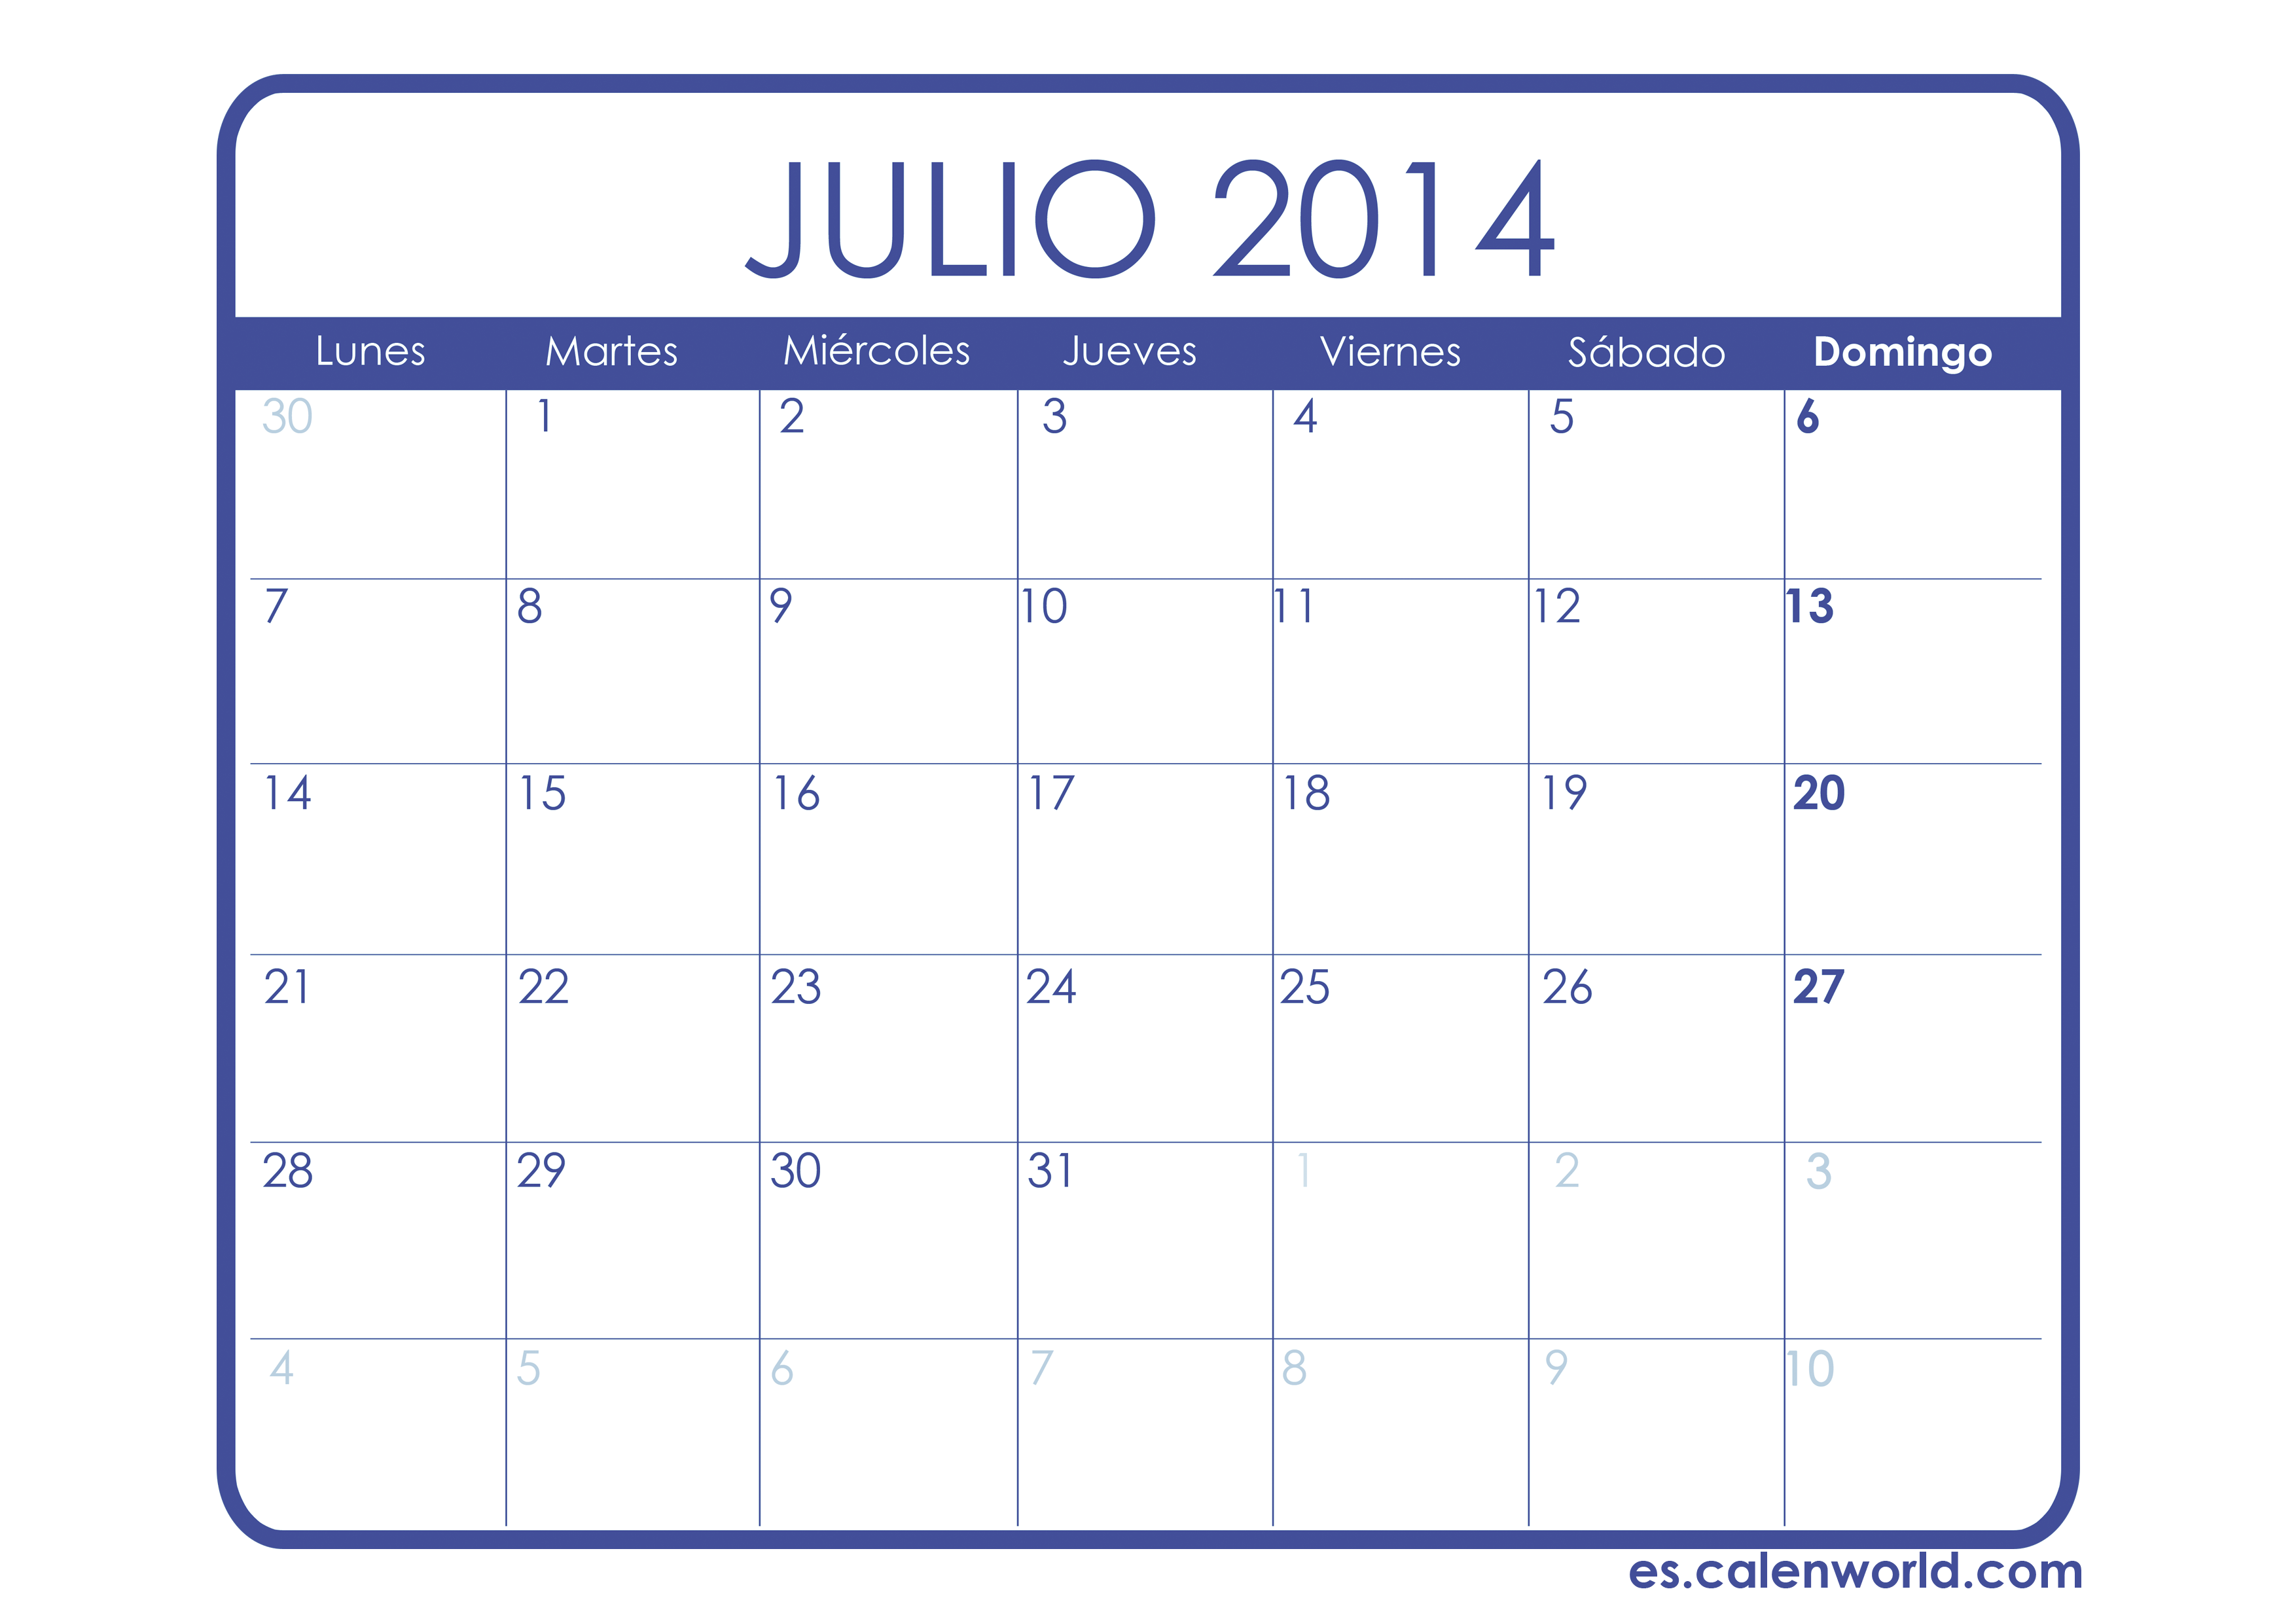 Calendario julio 2014